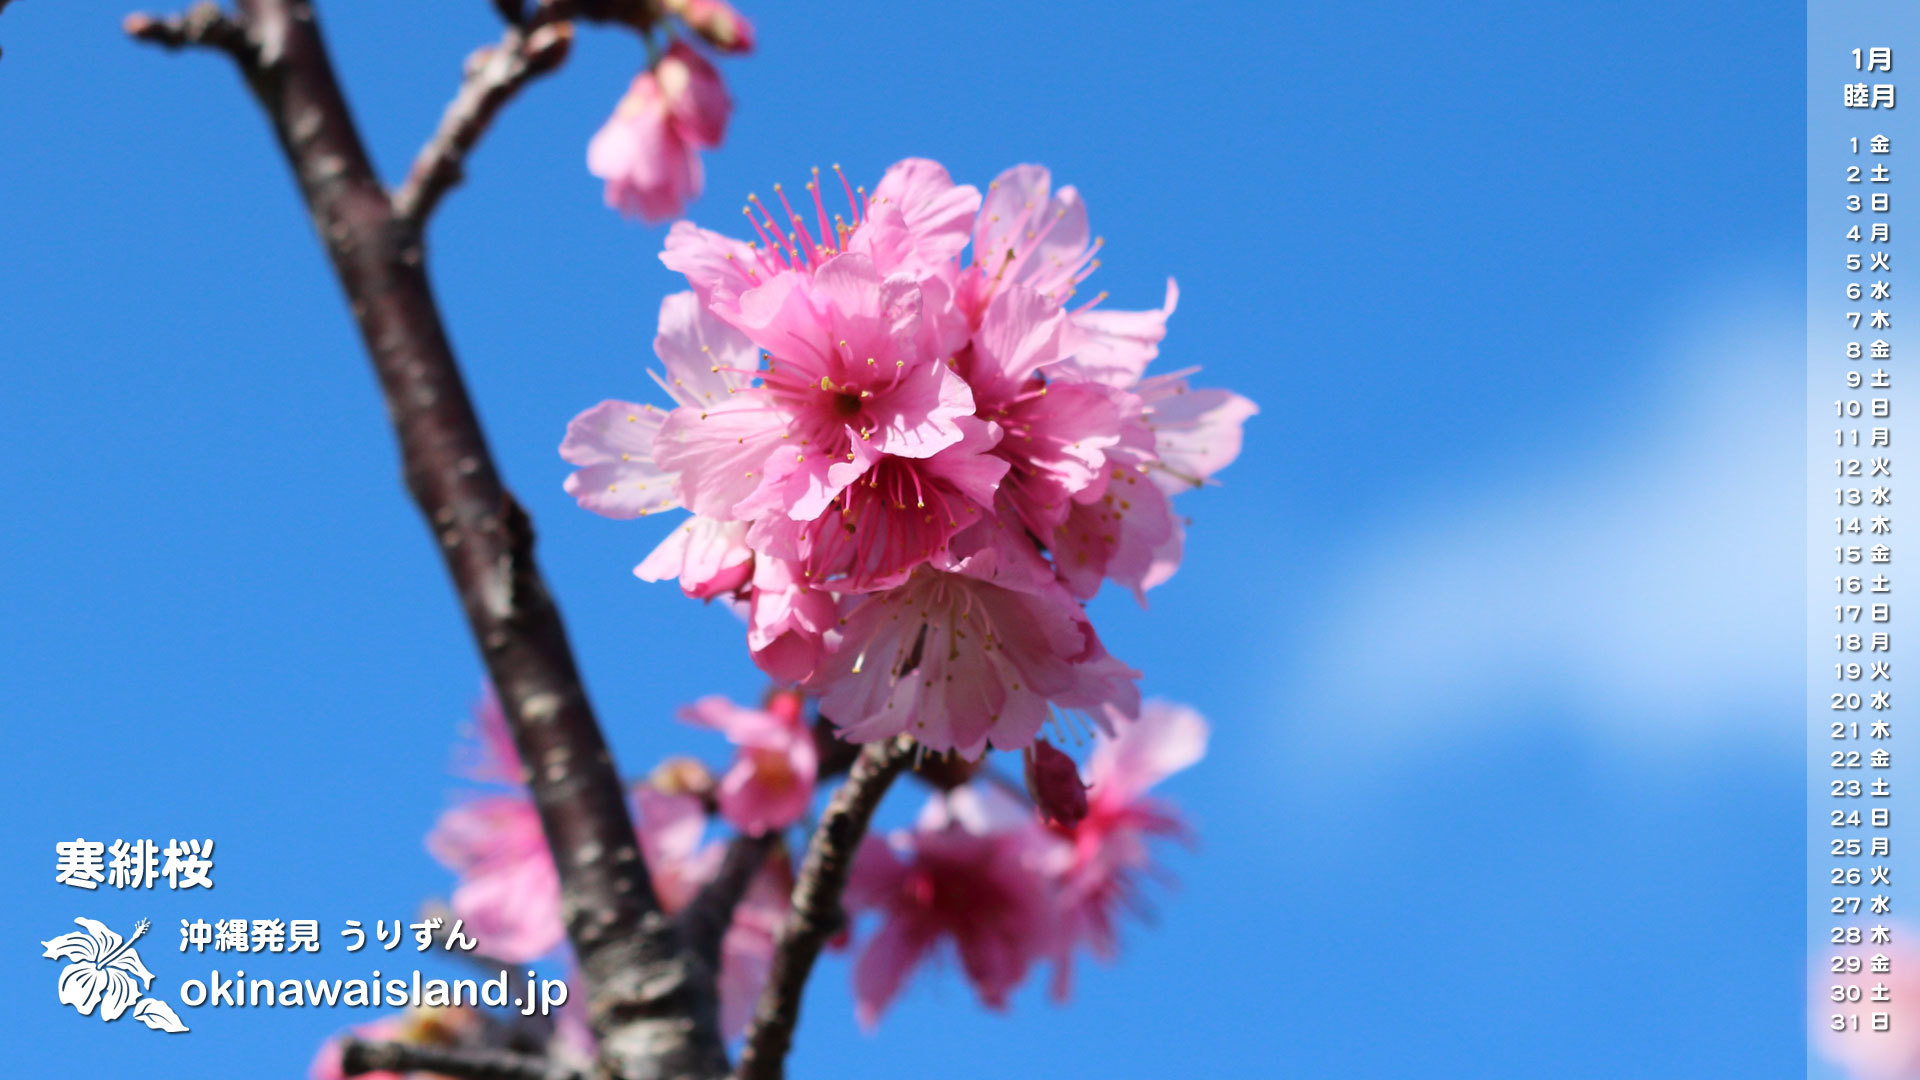 沖縄の風景 壁紙 デスクトップカレンダー 無料ダウンロード 寒緋桜 デスクトップカレンダー１月